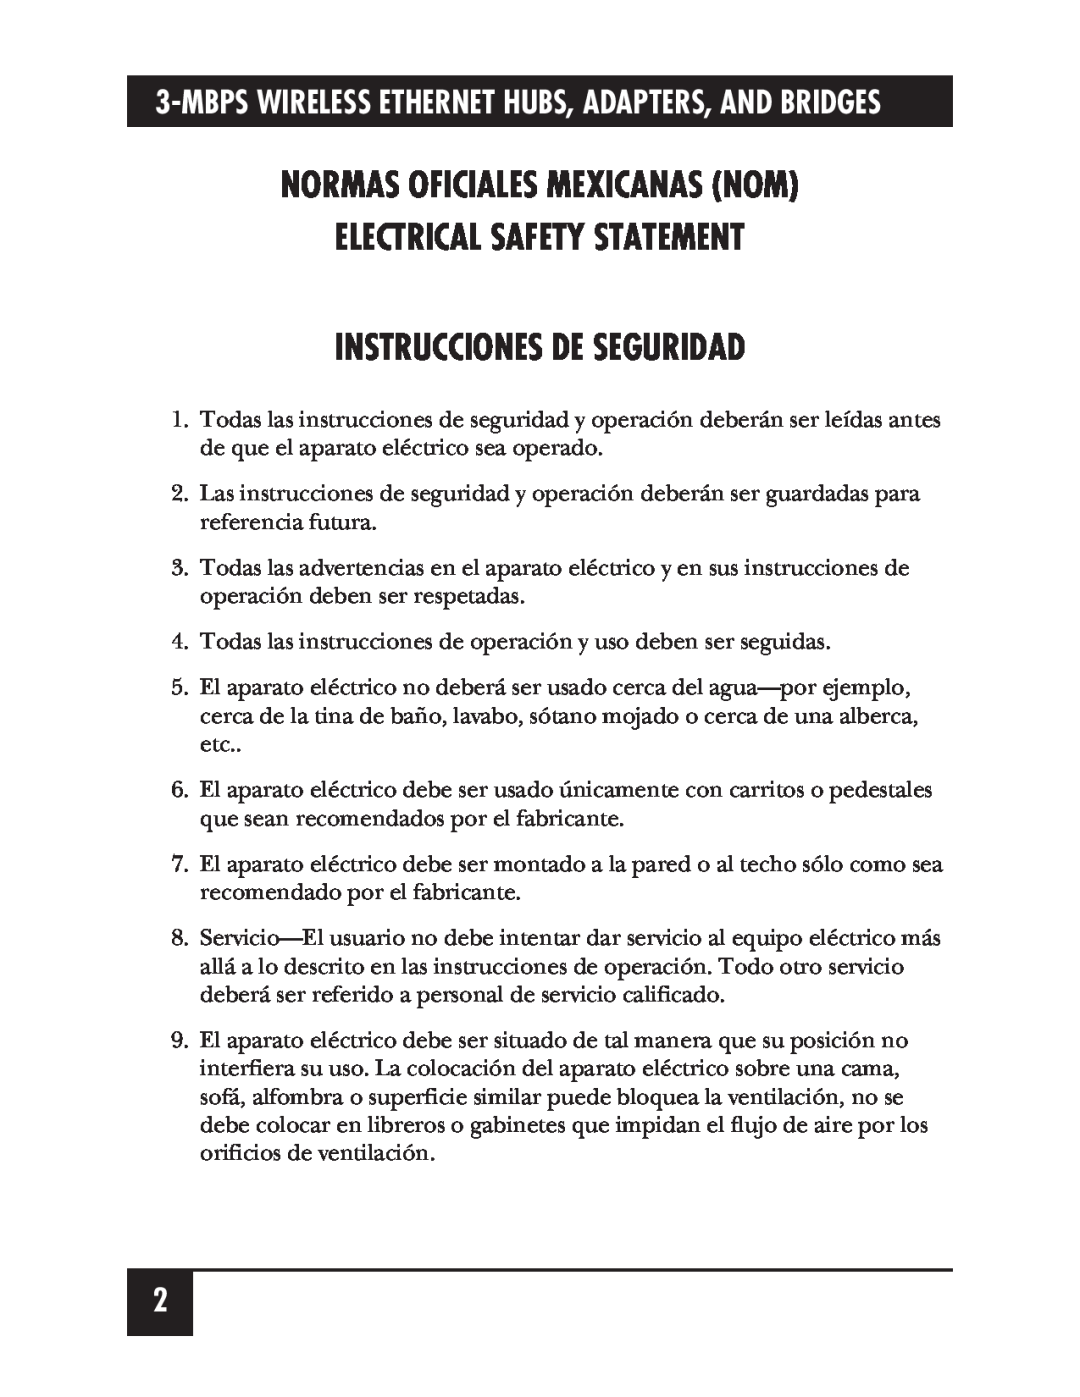 Black Box LW008A, LW012AE, LW011A Normas Oficiales Mexicanas Nom Electrical Safety Statement, Instrucciones De Seguridad 